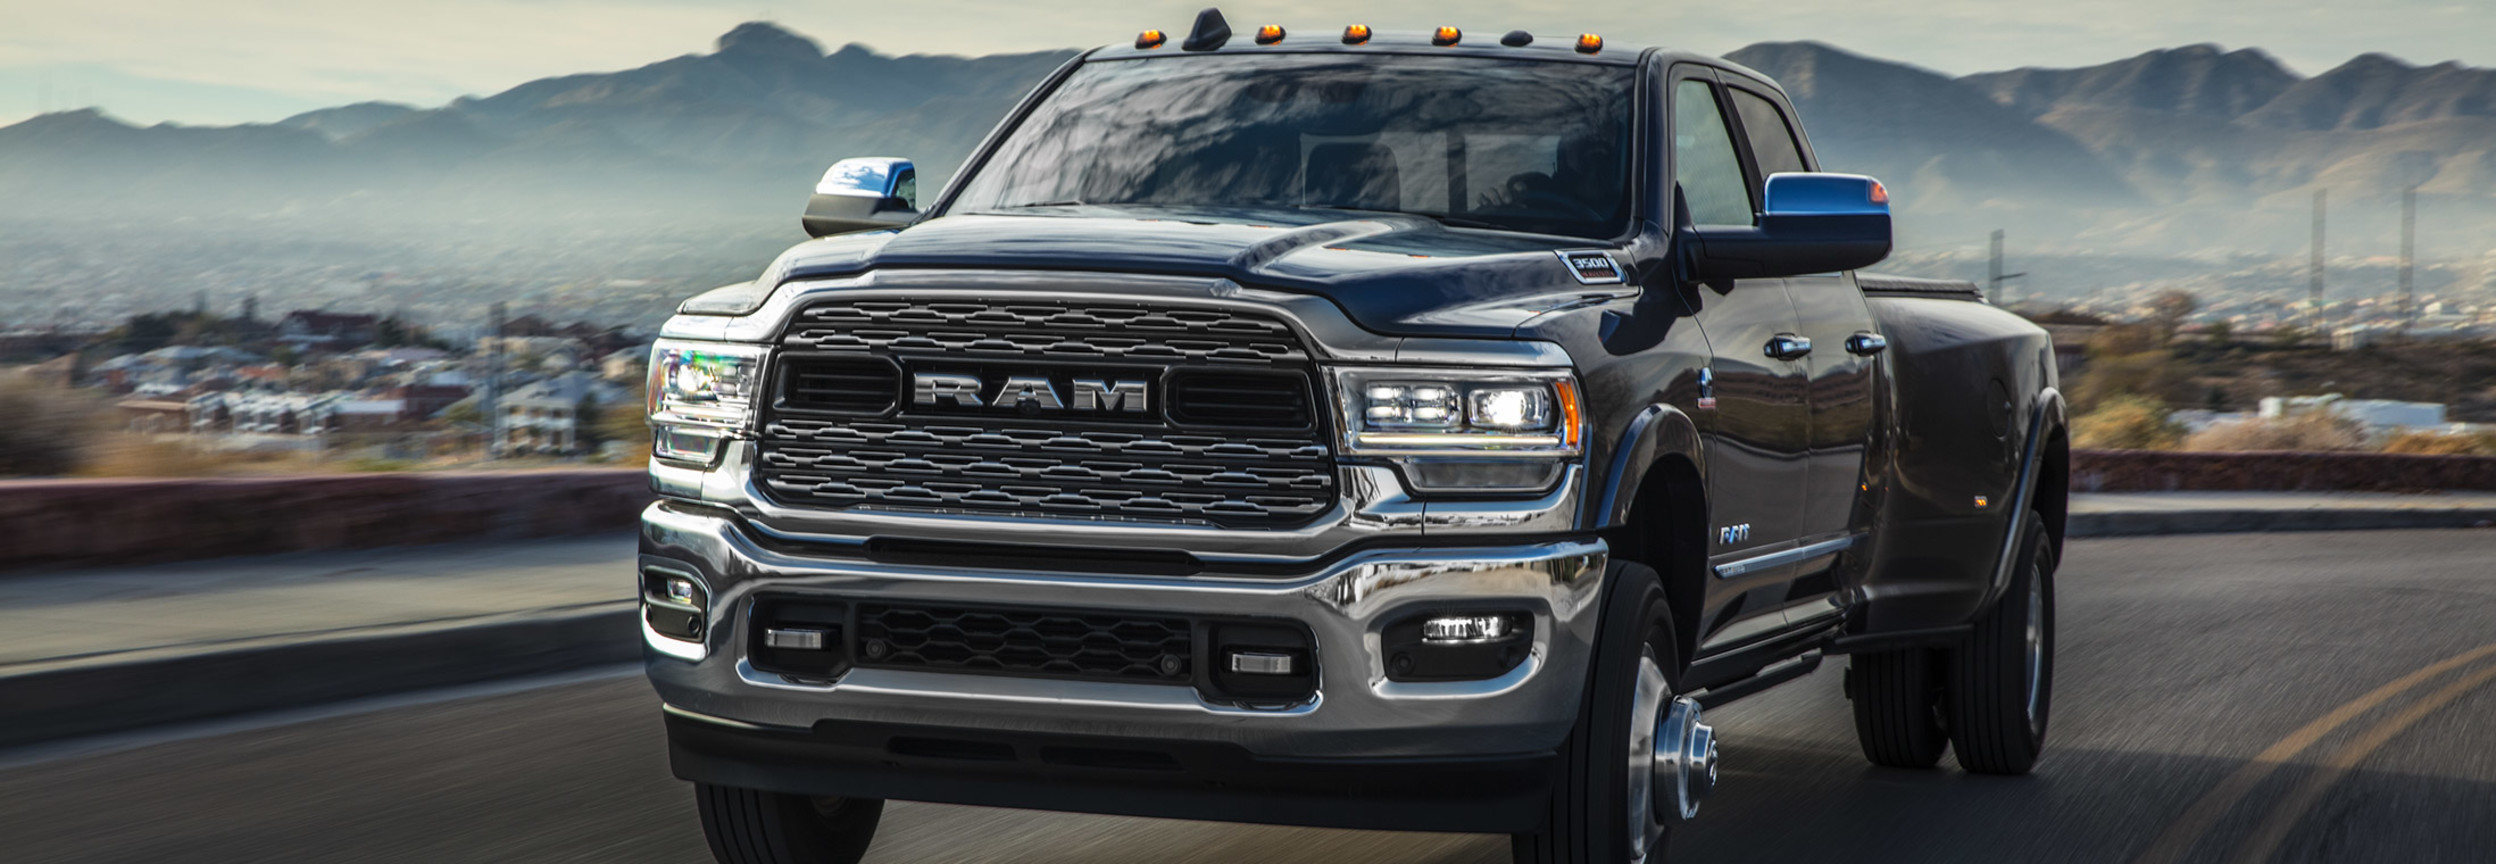 2021 Ram 3500 Interior & Exterior Design | Ram Truck Canada